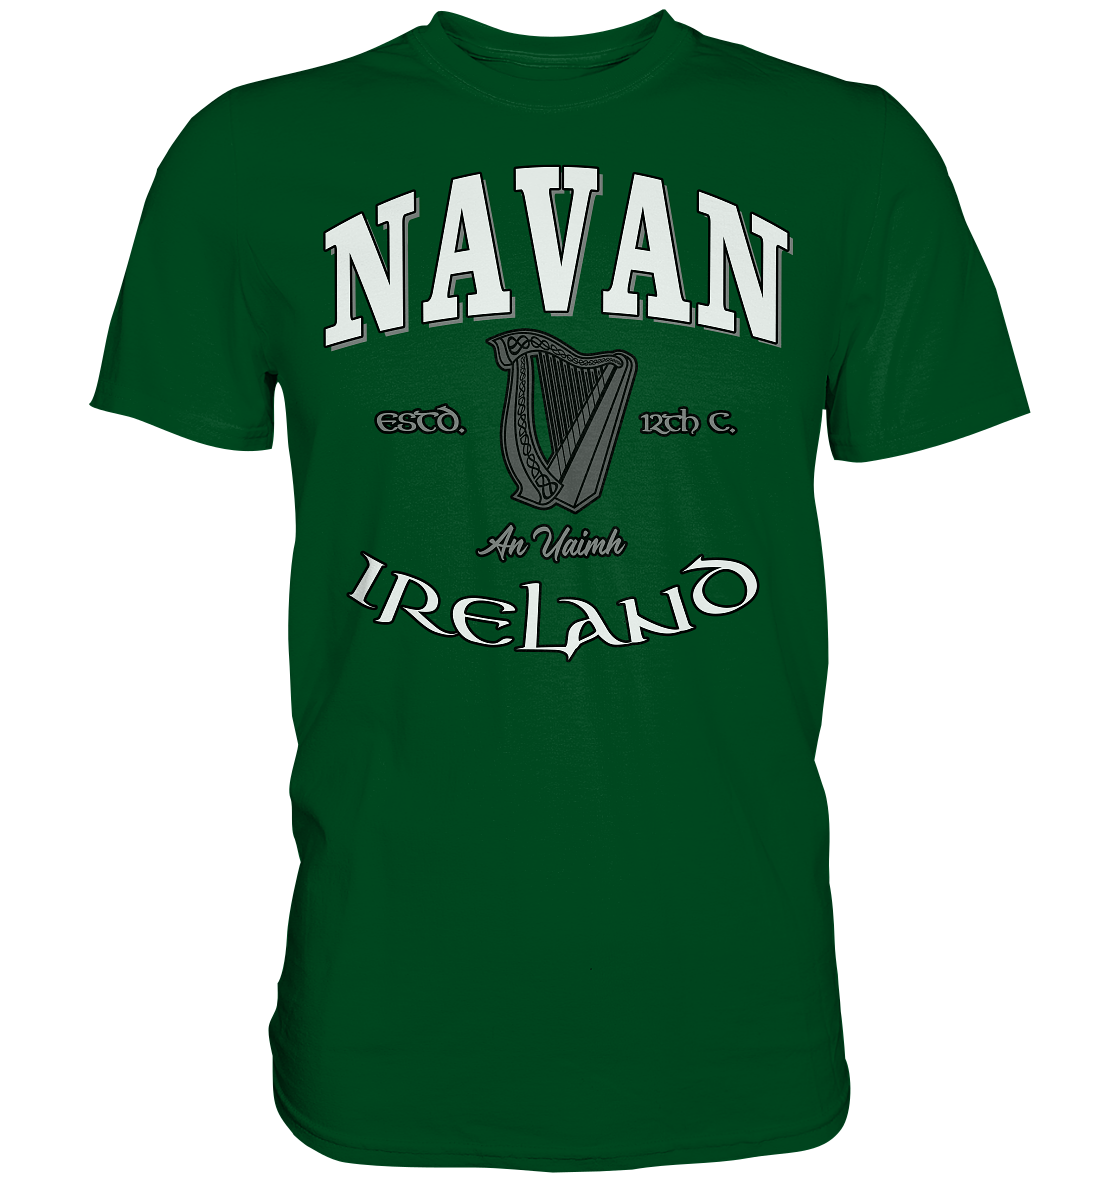 Navan "An Uaimh" - Premium Shirt